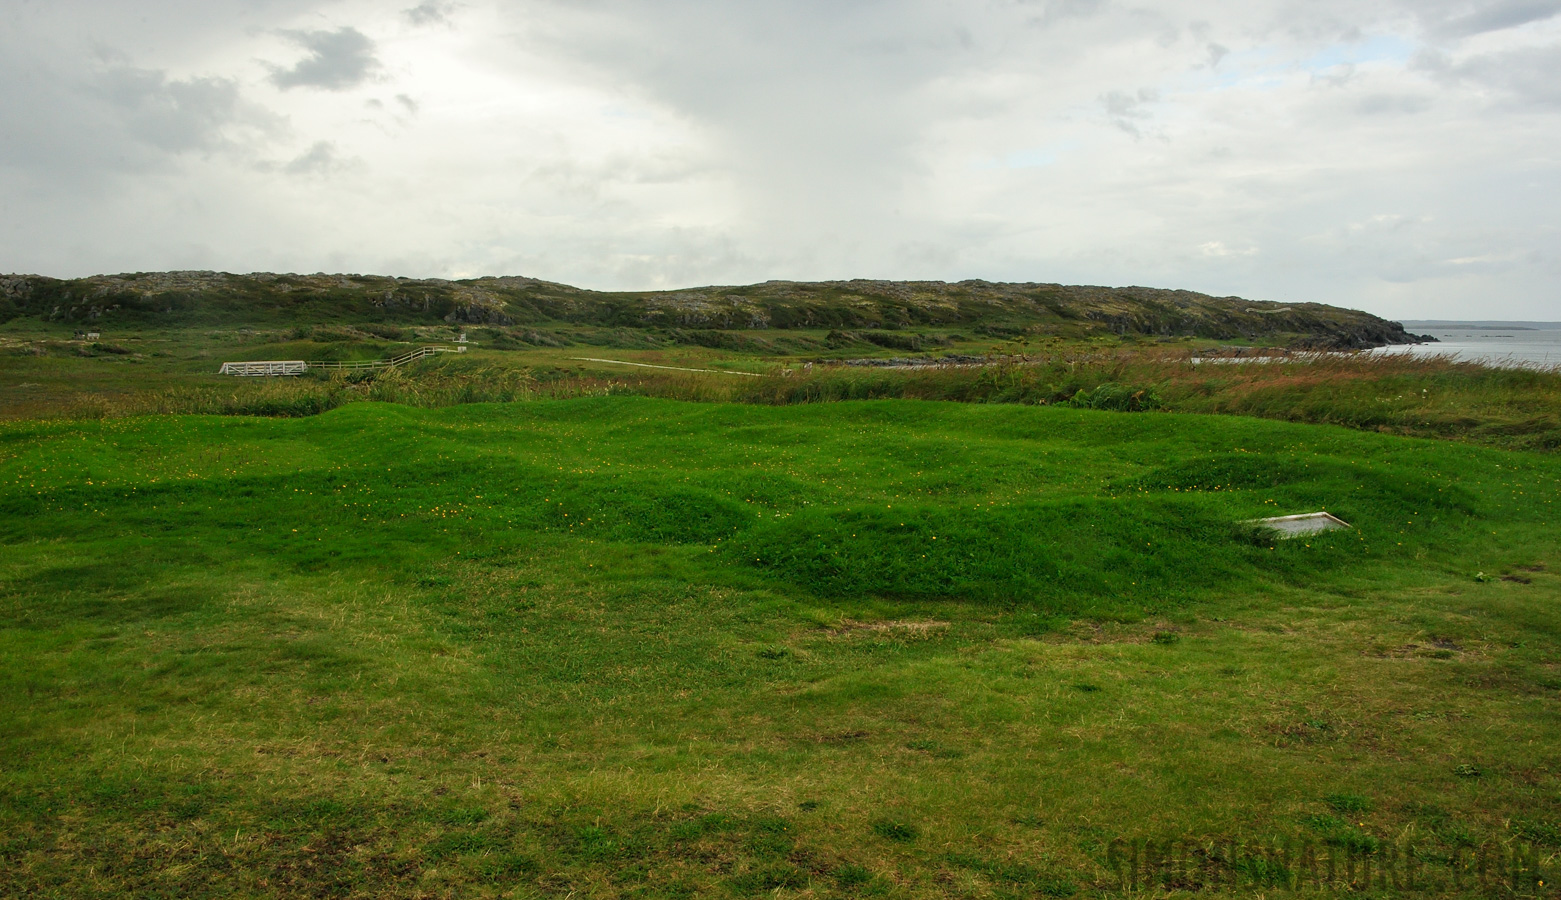 Ehemalige isländisch-grönländische Siedlung [28 mm, 1/250 Sek. bei f / 18, ISO 1600]